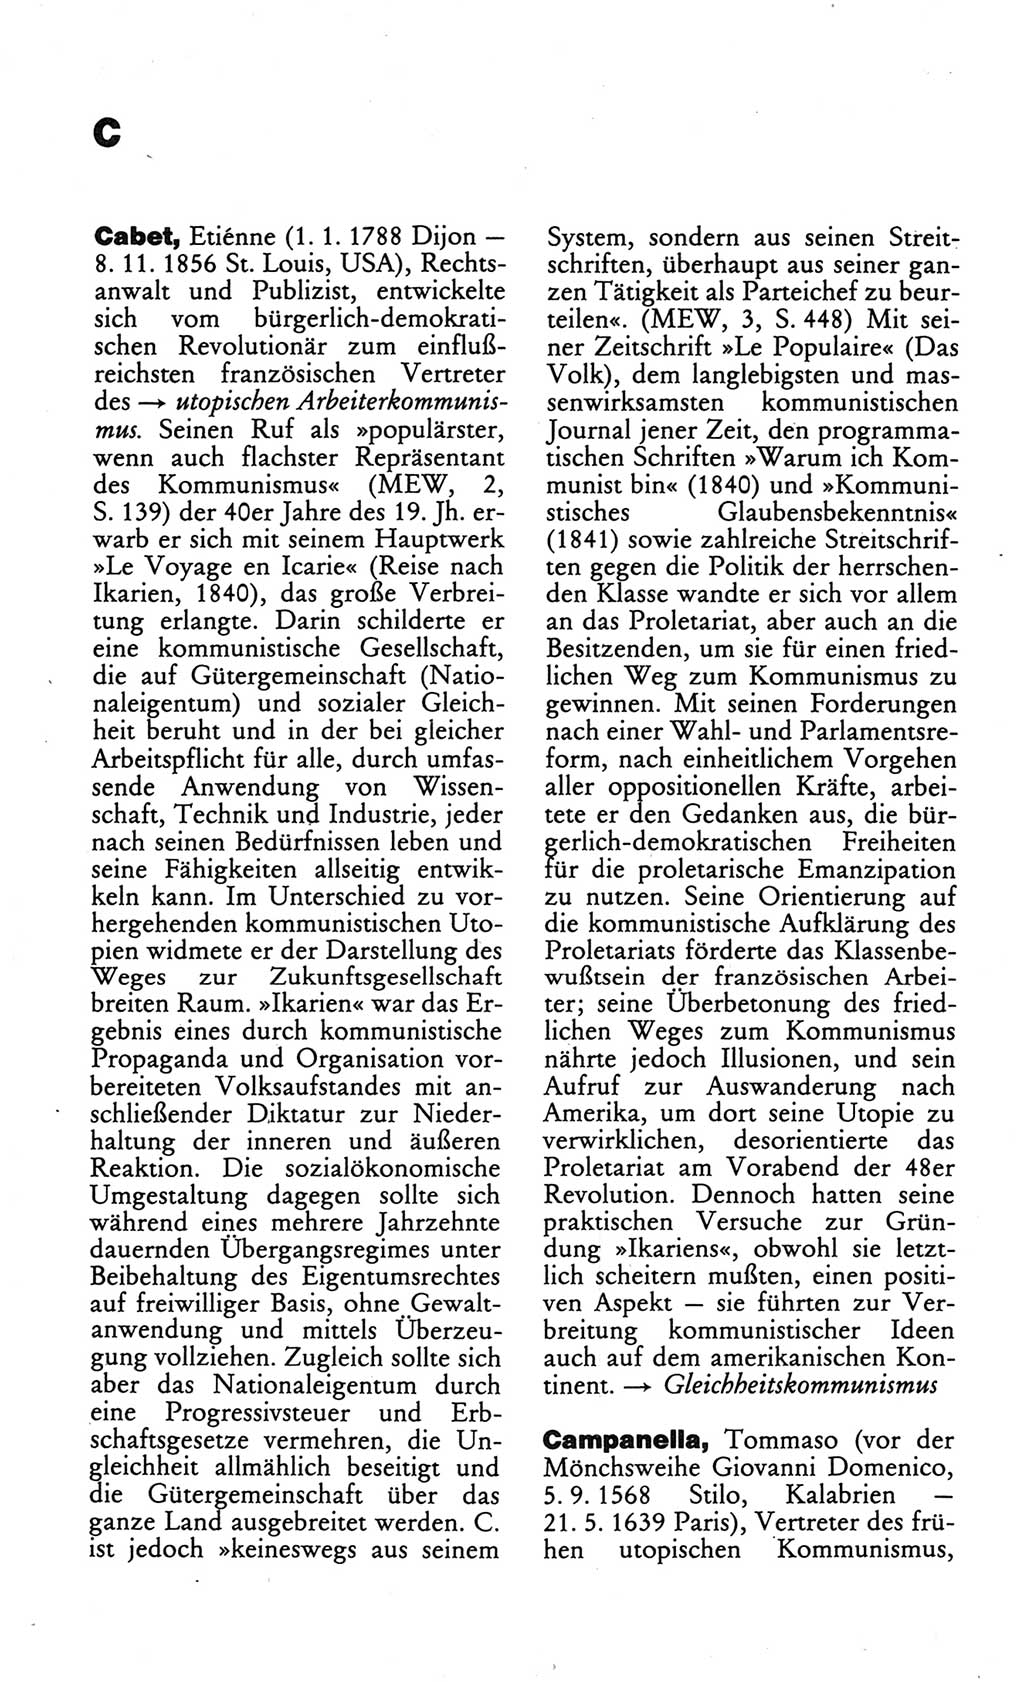 Wörterbuch des wissenschaftlichen Kommunismus [Deutsche Demokratische Republik (DDR)] 1984, Seite 68 (Wb. wiss. Komm. DDR 1984, S. 68)